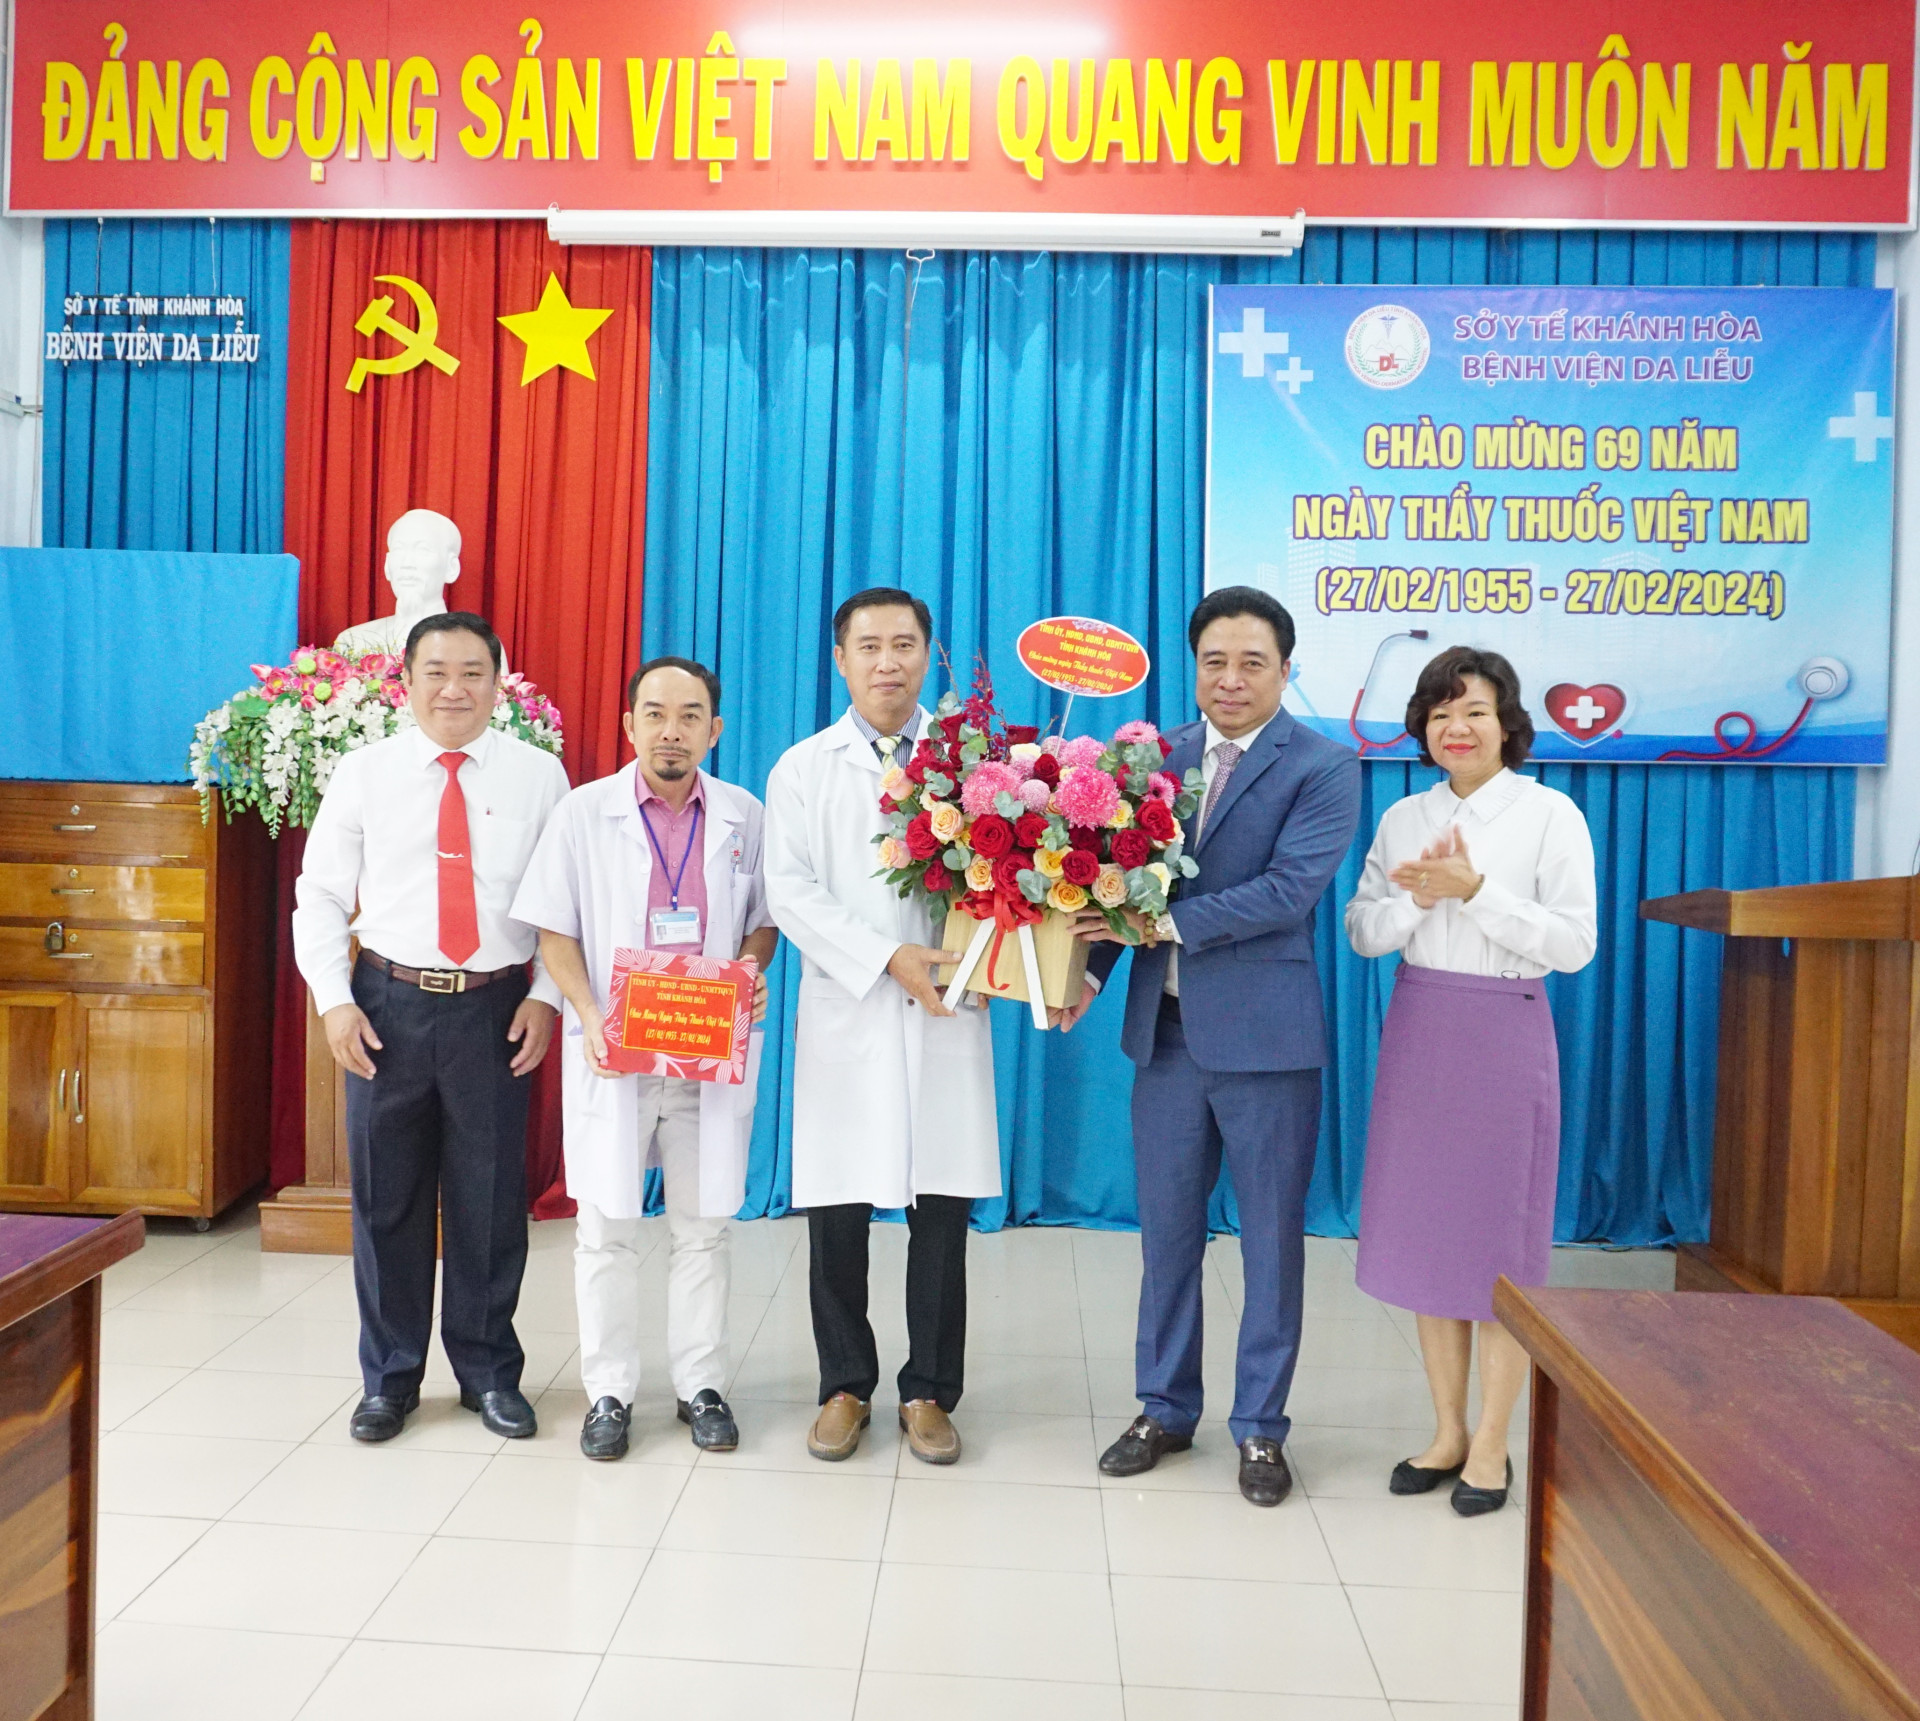 Ông Nguyễn Khắc Toàn tặng hoa và quà cho tập thể Bệnh viện Da liễu Khánh Hòa